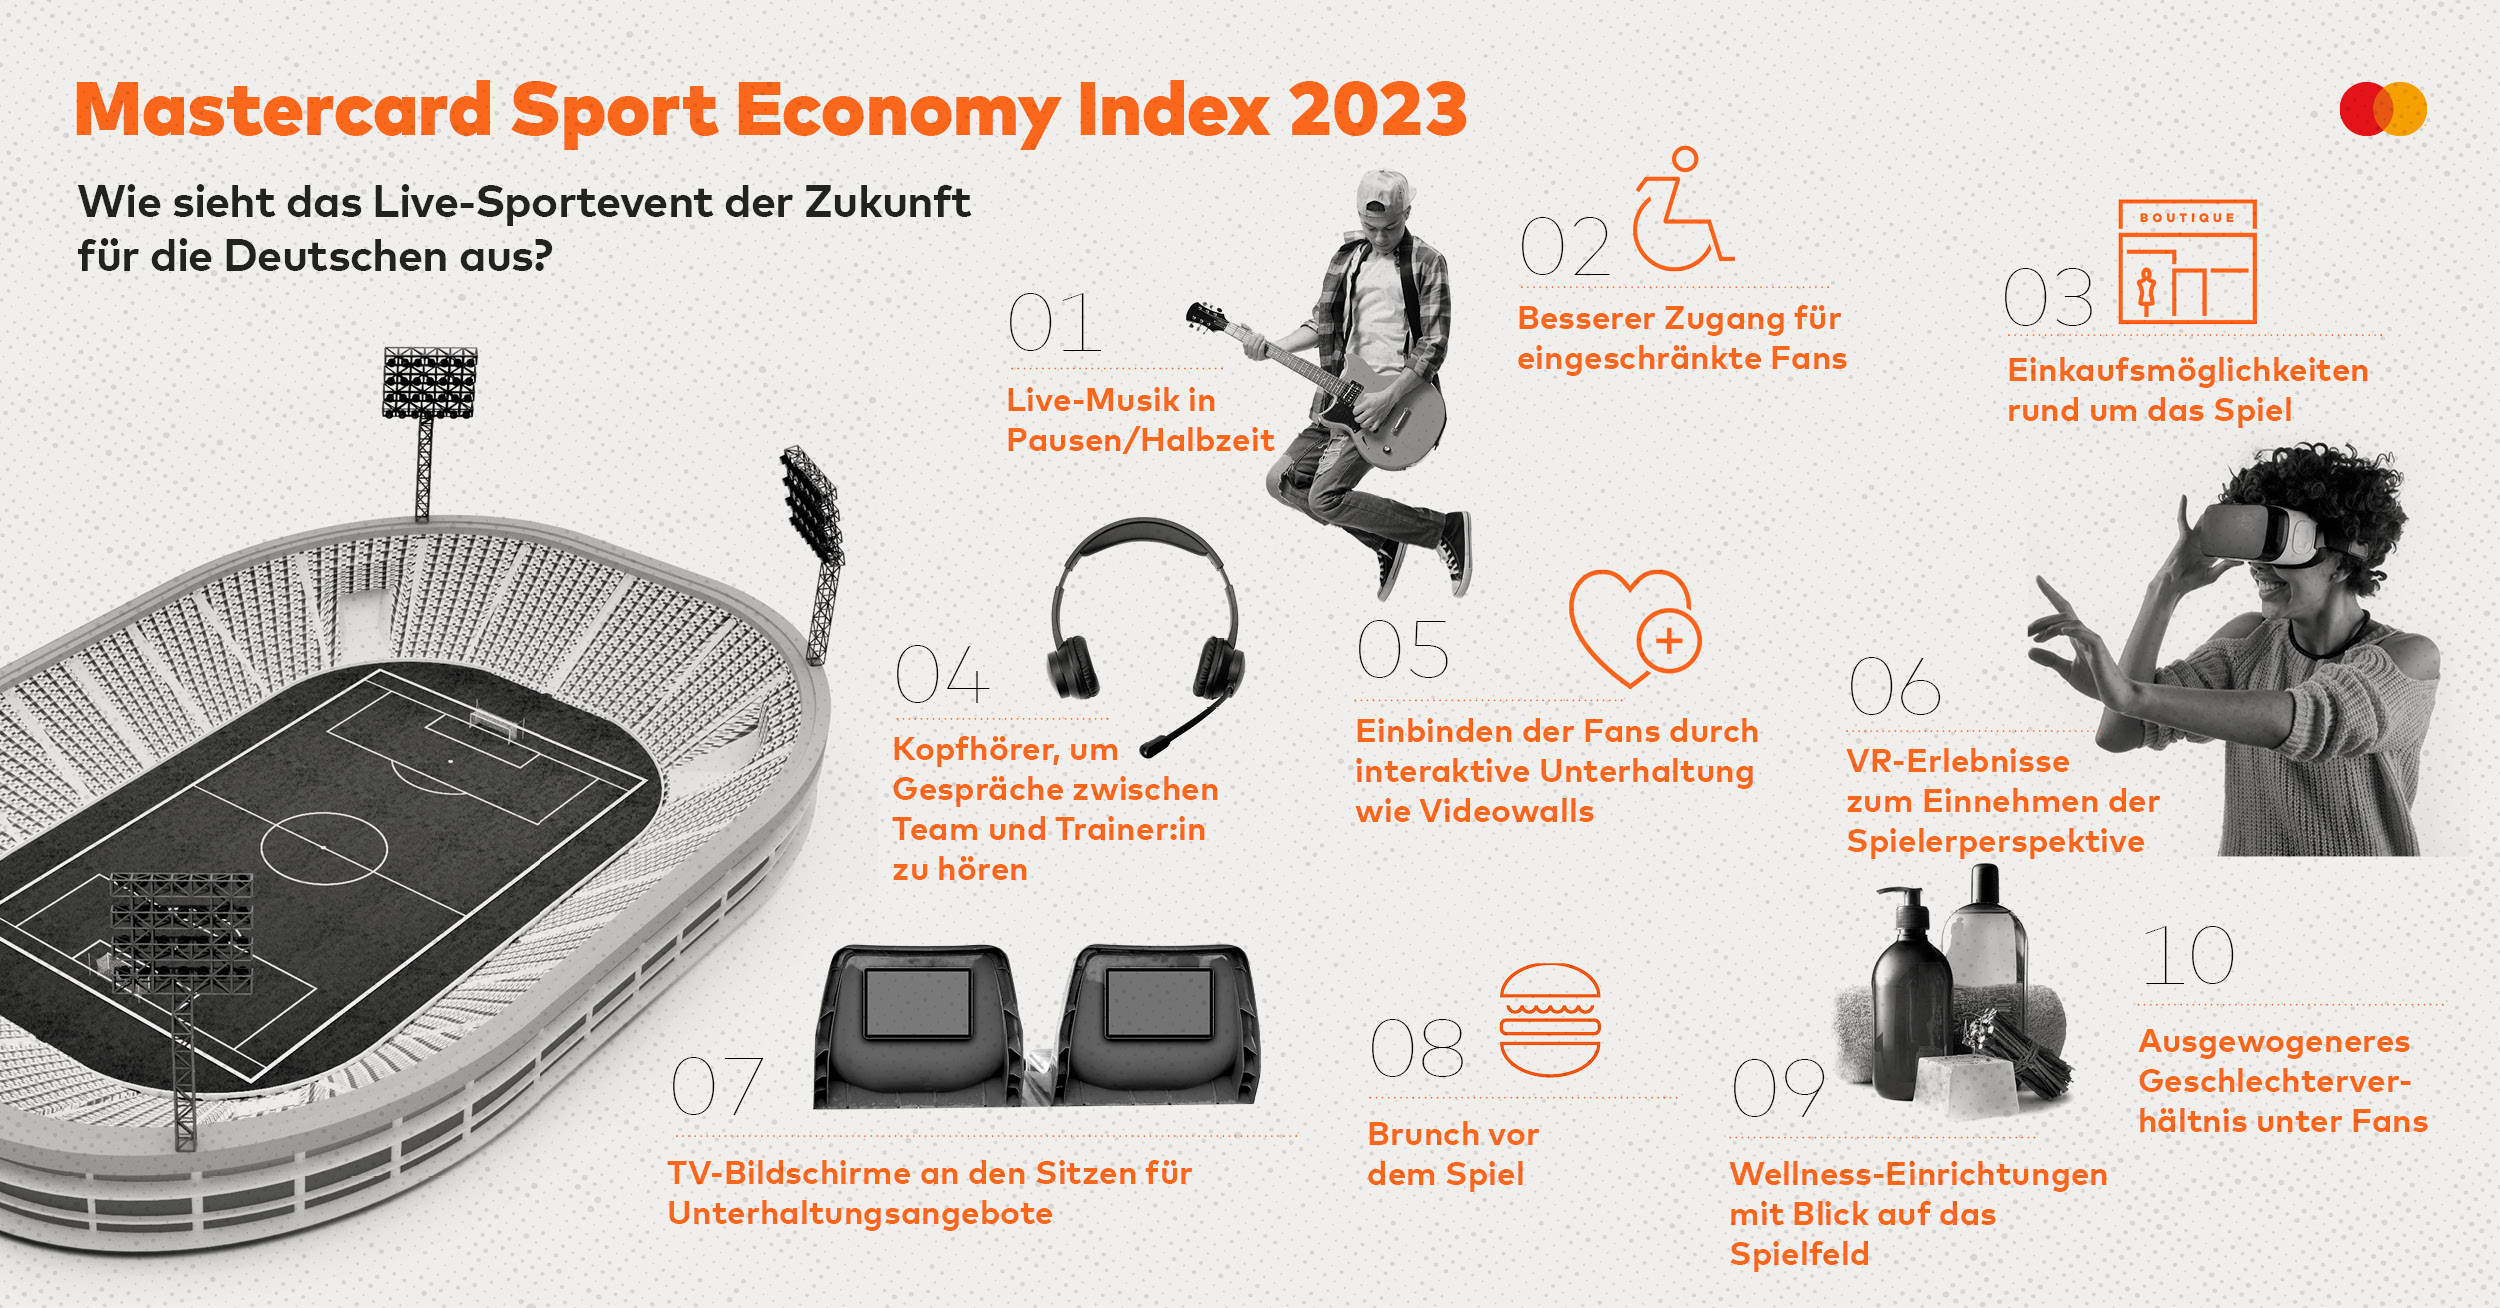 Mastercard Sport Economy Index 2023: So sieht das Sport-Event der Zukunft aus